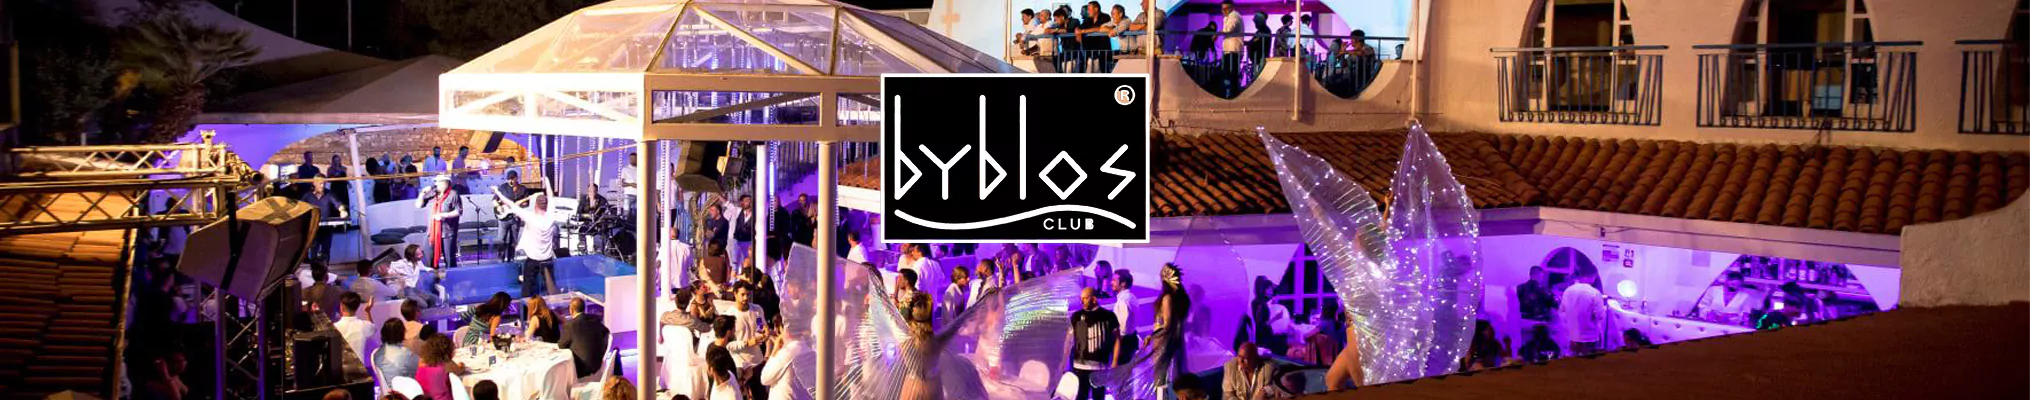 Byblos-club-2023